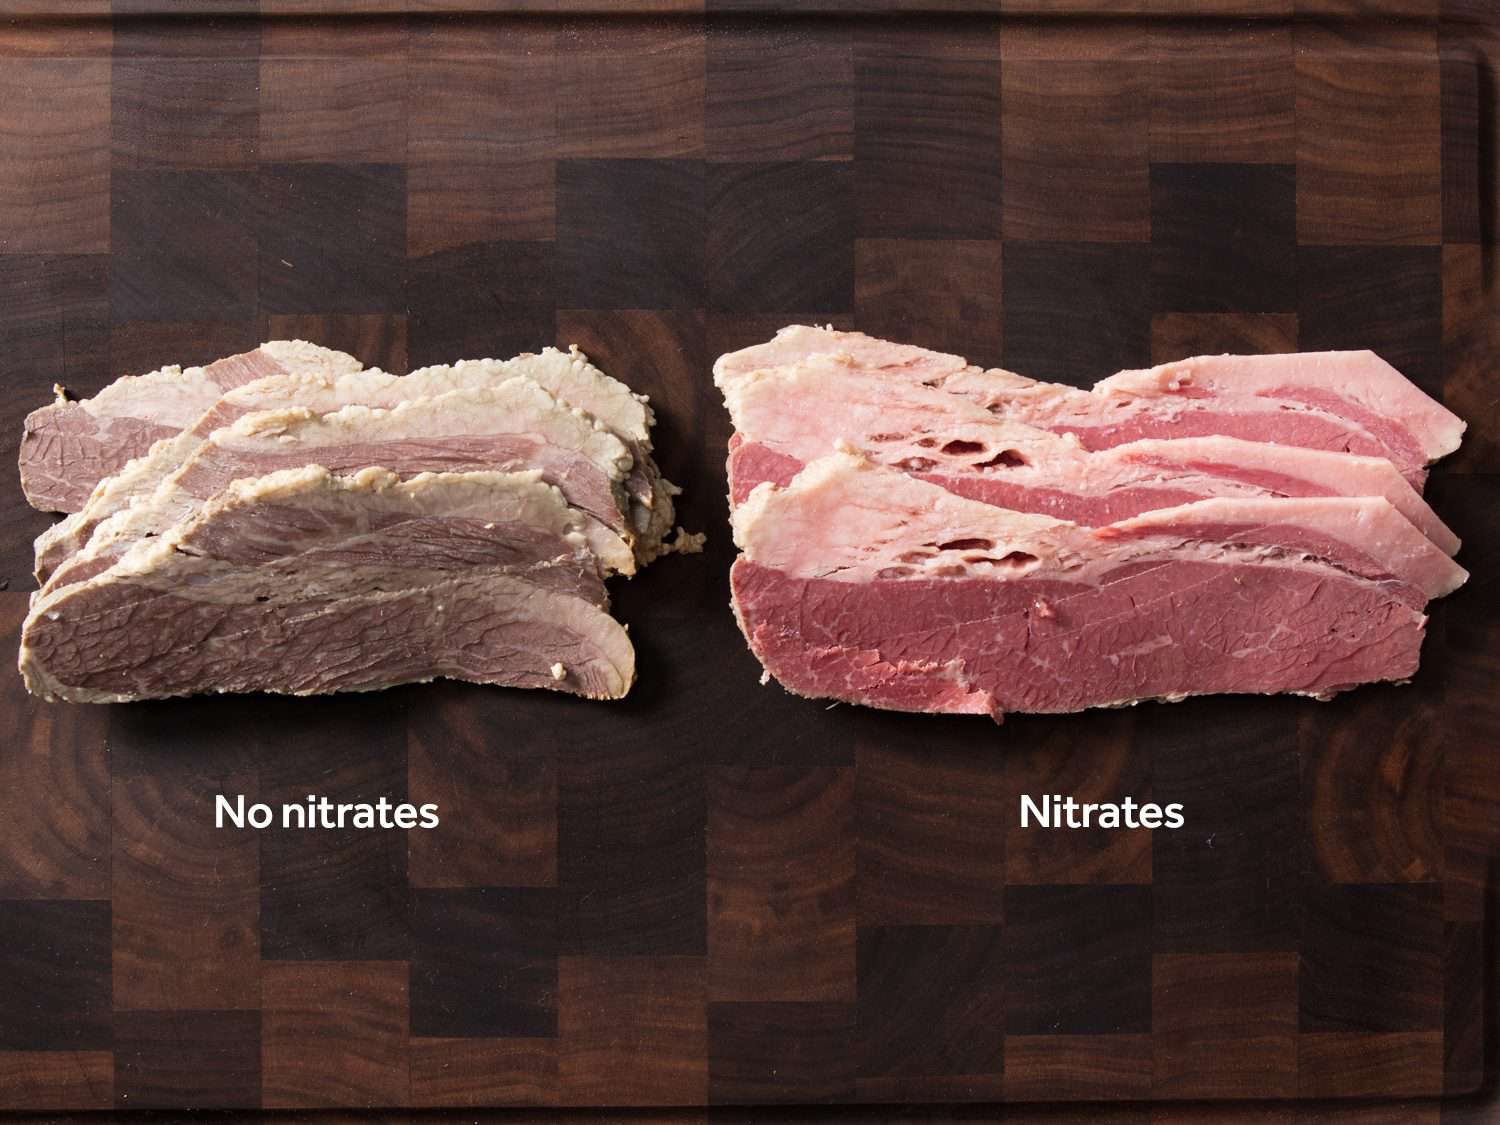 无亚硝酸盐腌牛肉(左)和有亚硝酸盐腌牛肉(右)的对比